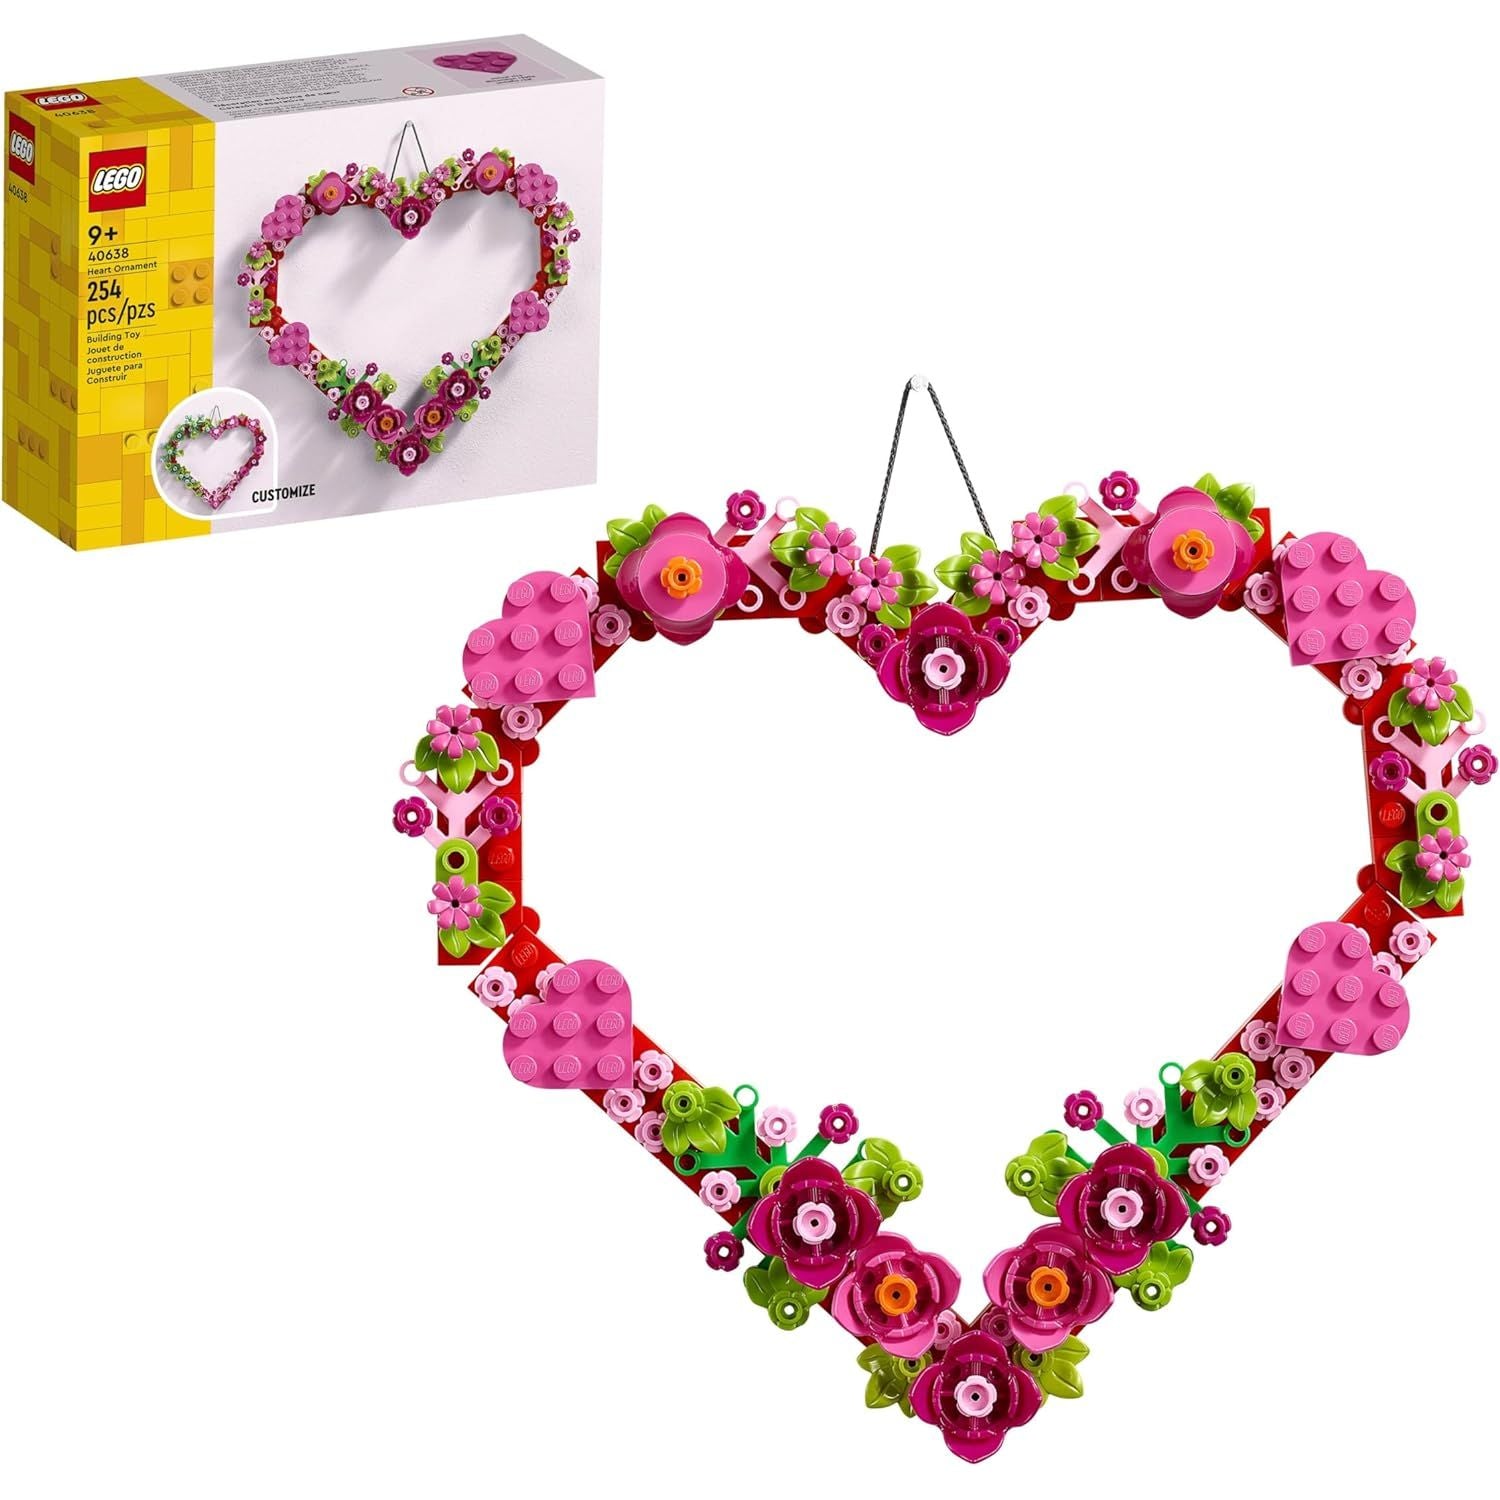 مجموعة ألعاب بناء زخرفة القلب من ليجو 40638، تشكيلة من الزهور الاصطناعية على شكل قلب، هدية رائعة لأحبائك، نشاط فني وحرف فريد للأطفال.